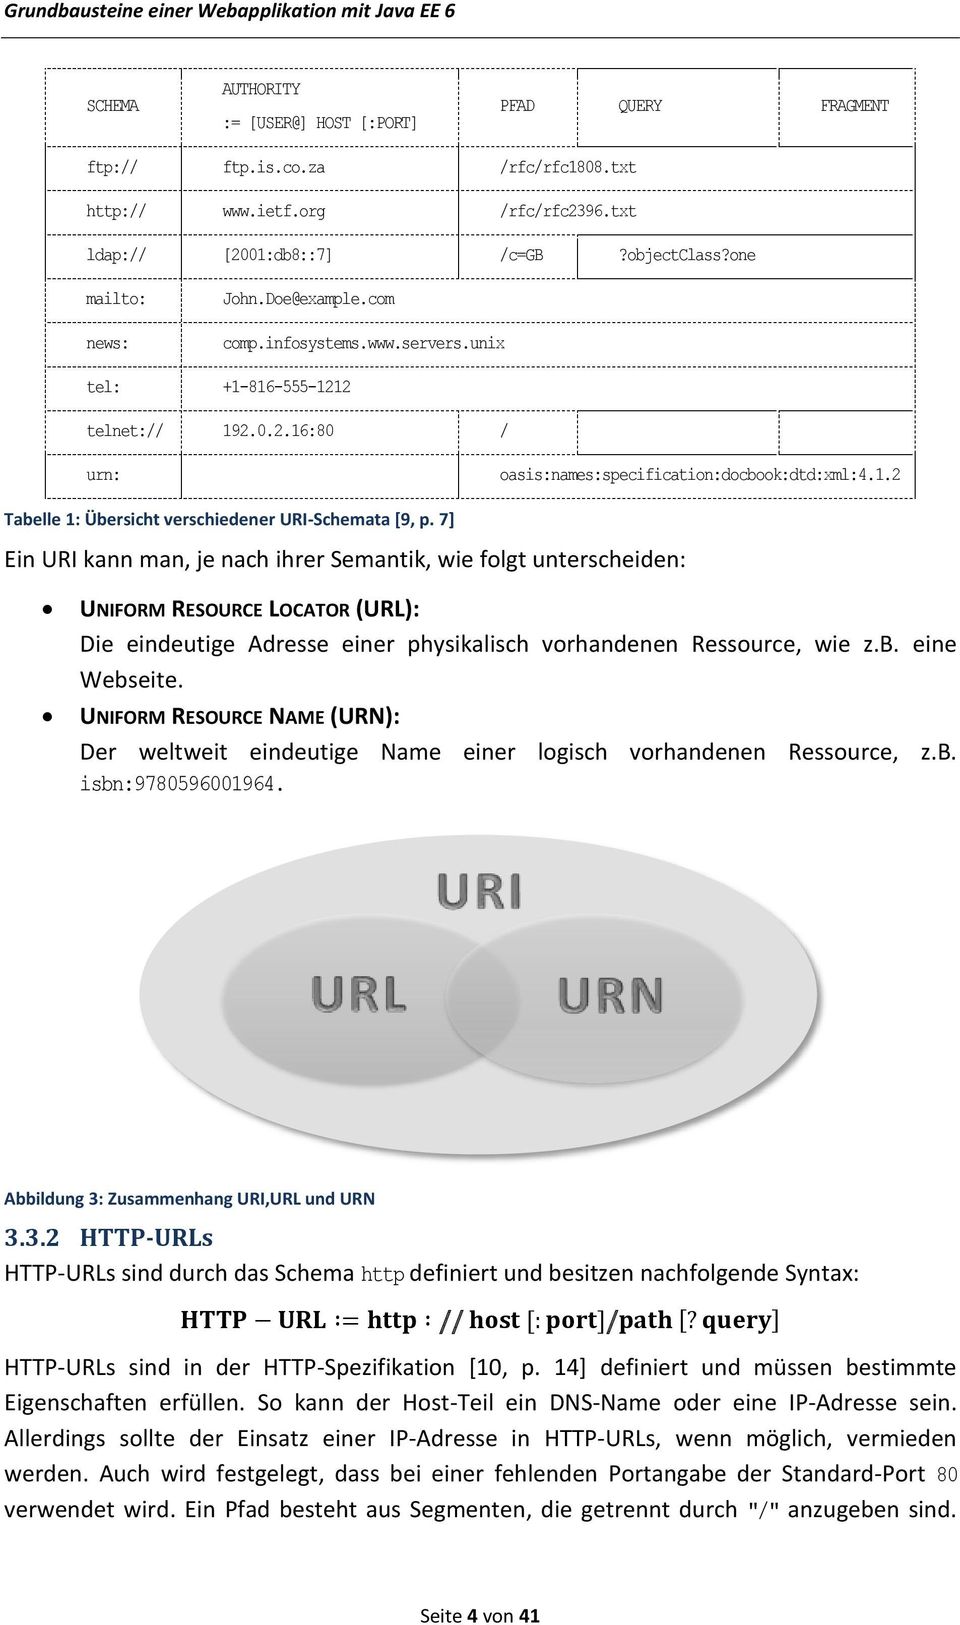 7] Ein URI kann man, je nach ihrer Semantik, wie folgt unterscheiden: UNIFORM RESOURCE LOCATOR (URL): Die eindeutige Adresse einer physikalisch vorhandenen Ressource, wie z.b. eine Webseite.